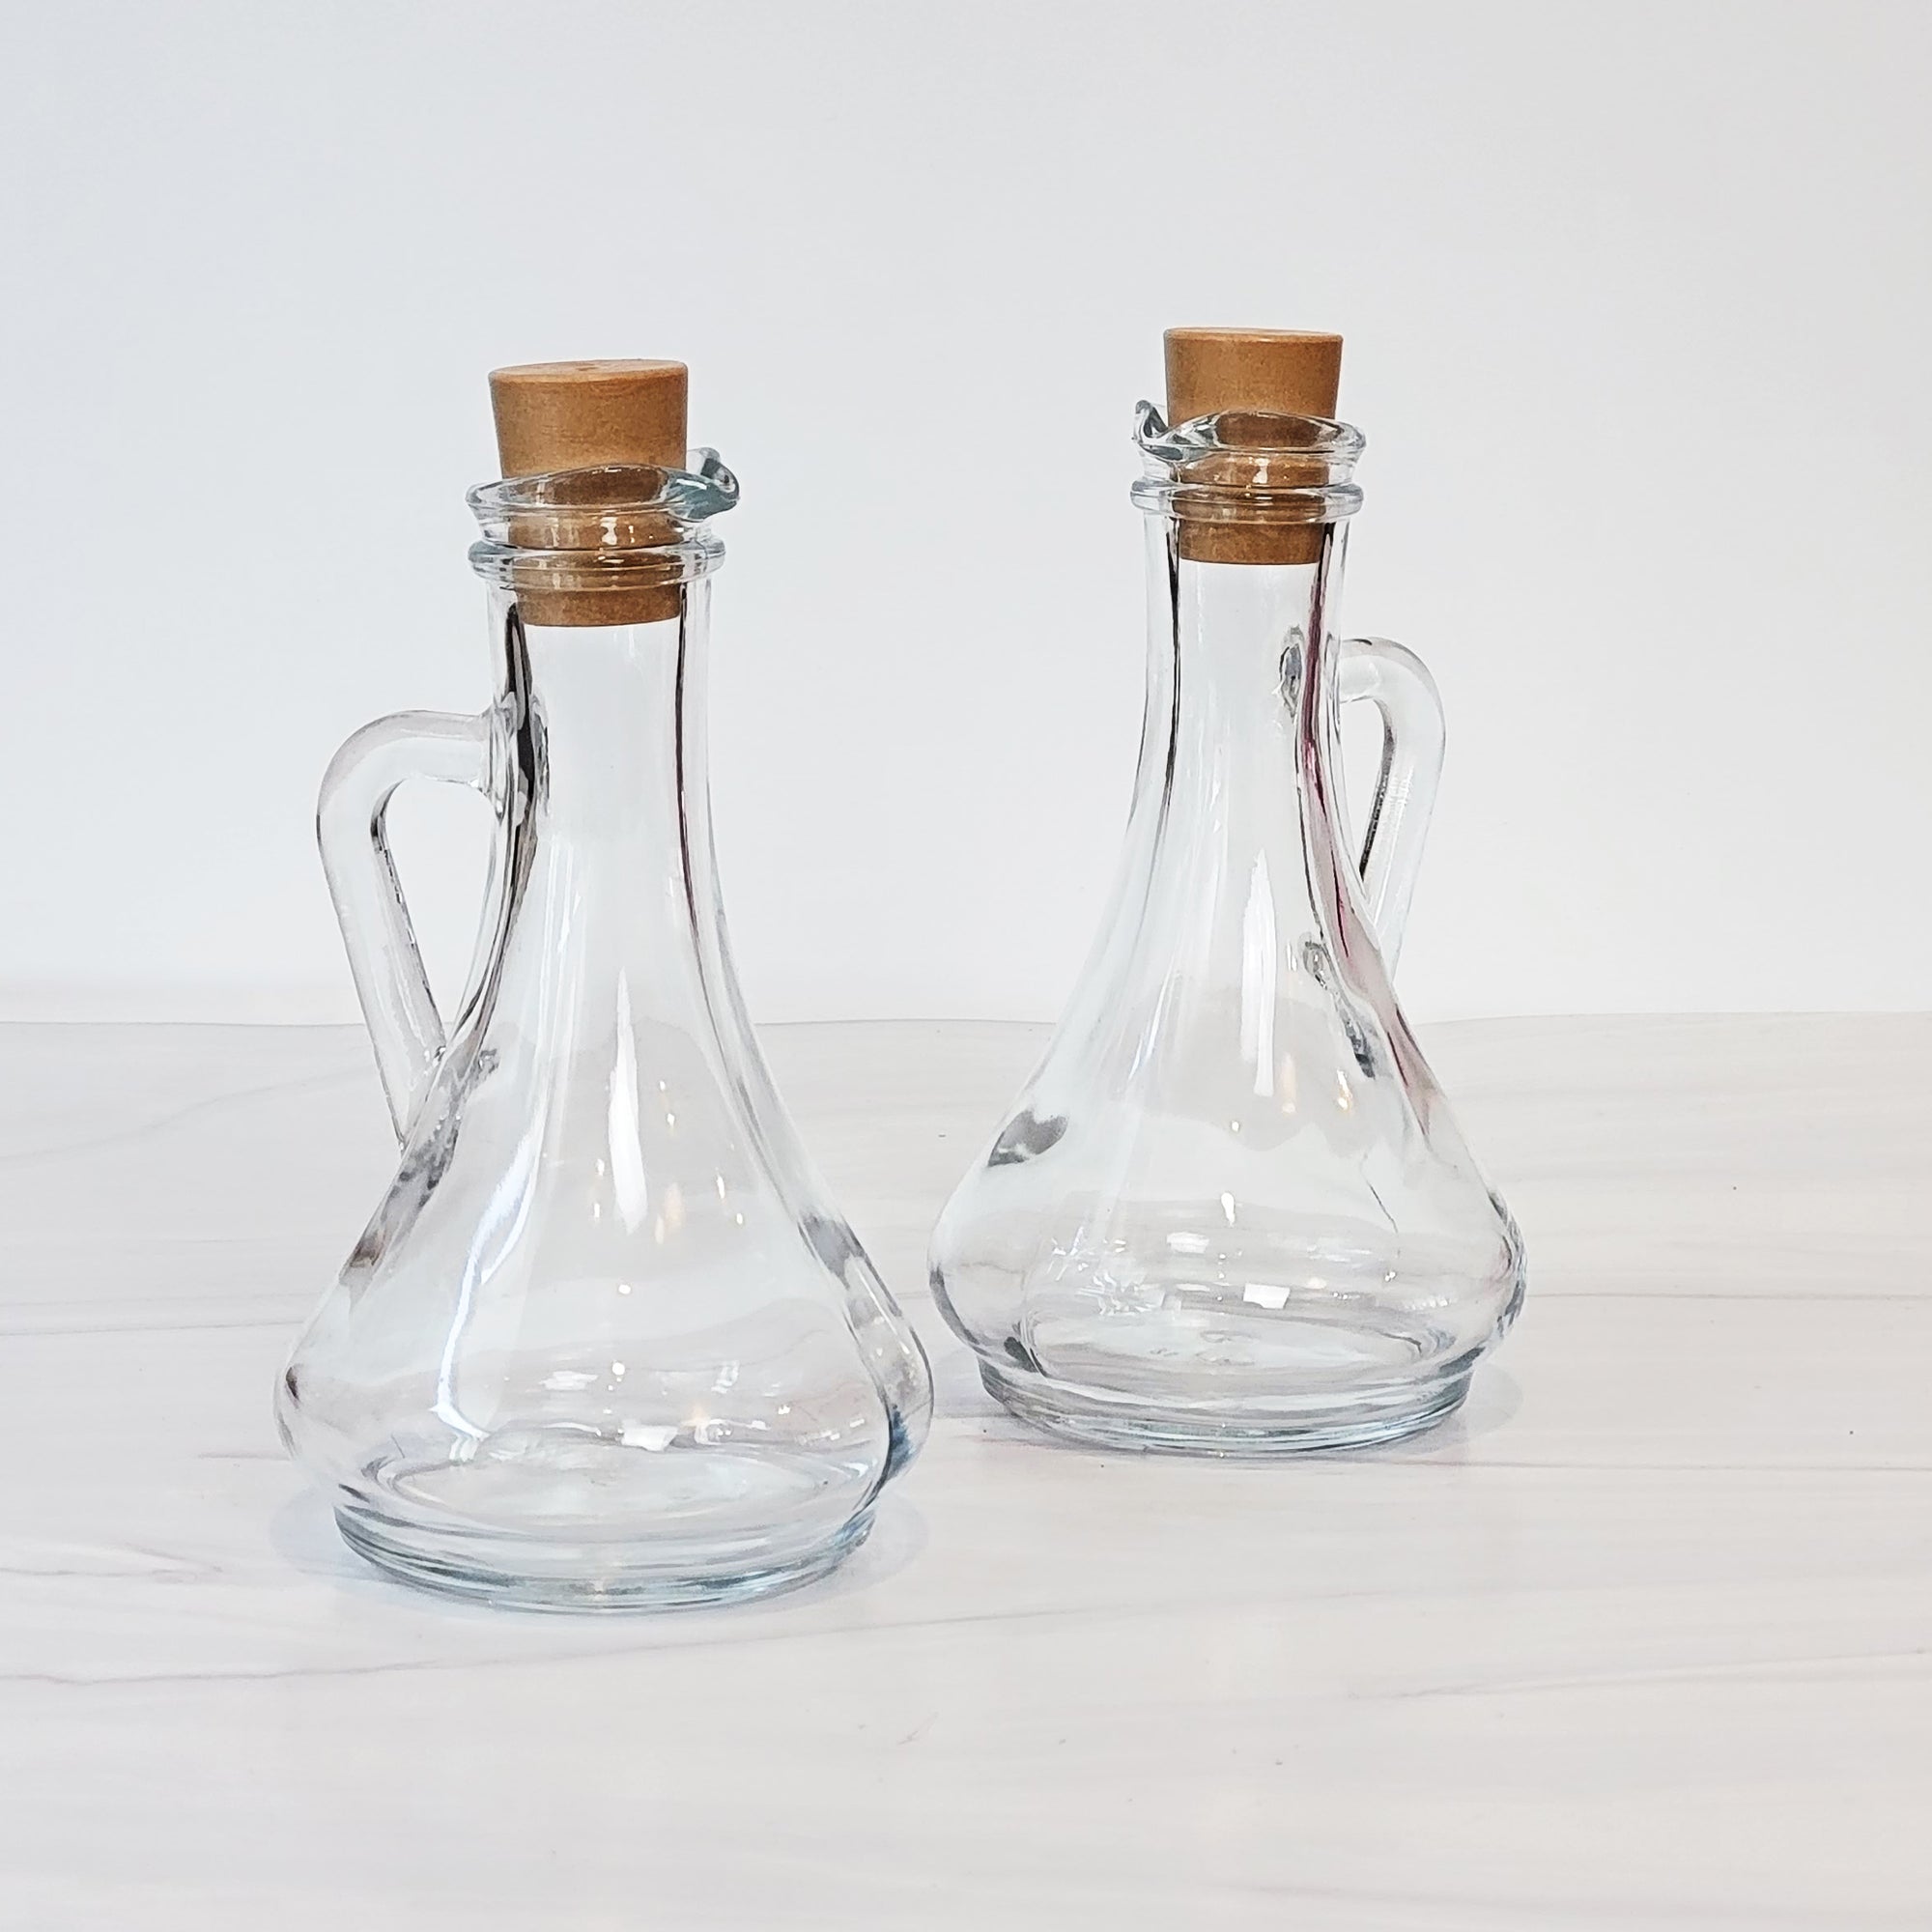 Classic glass oil and vinegar bottles